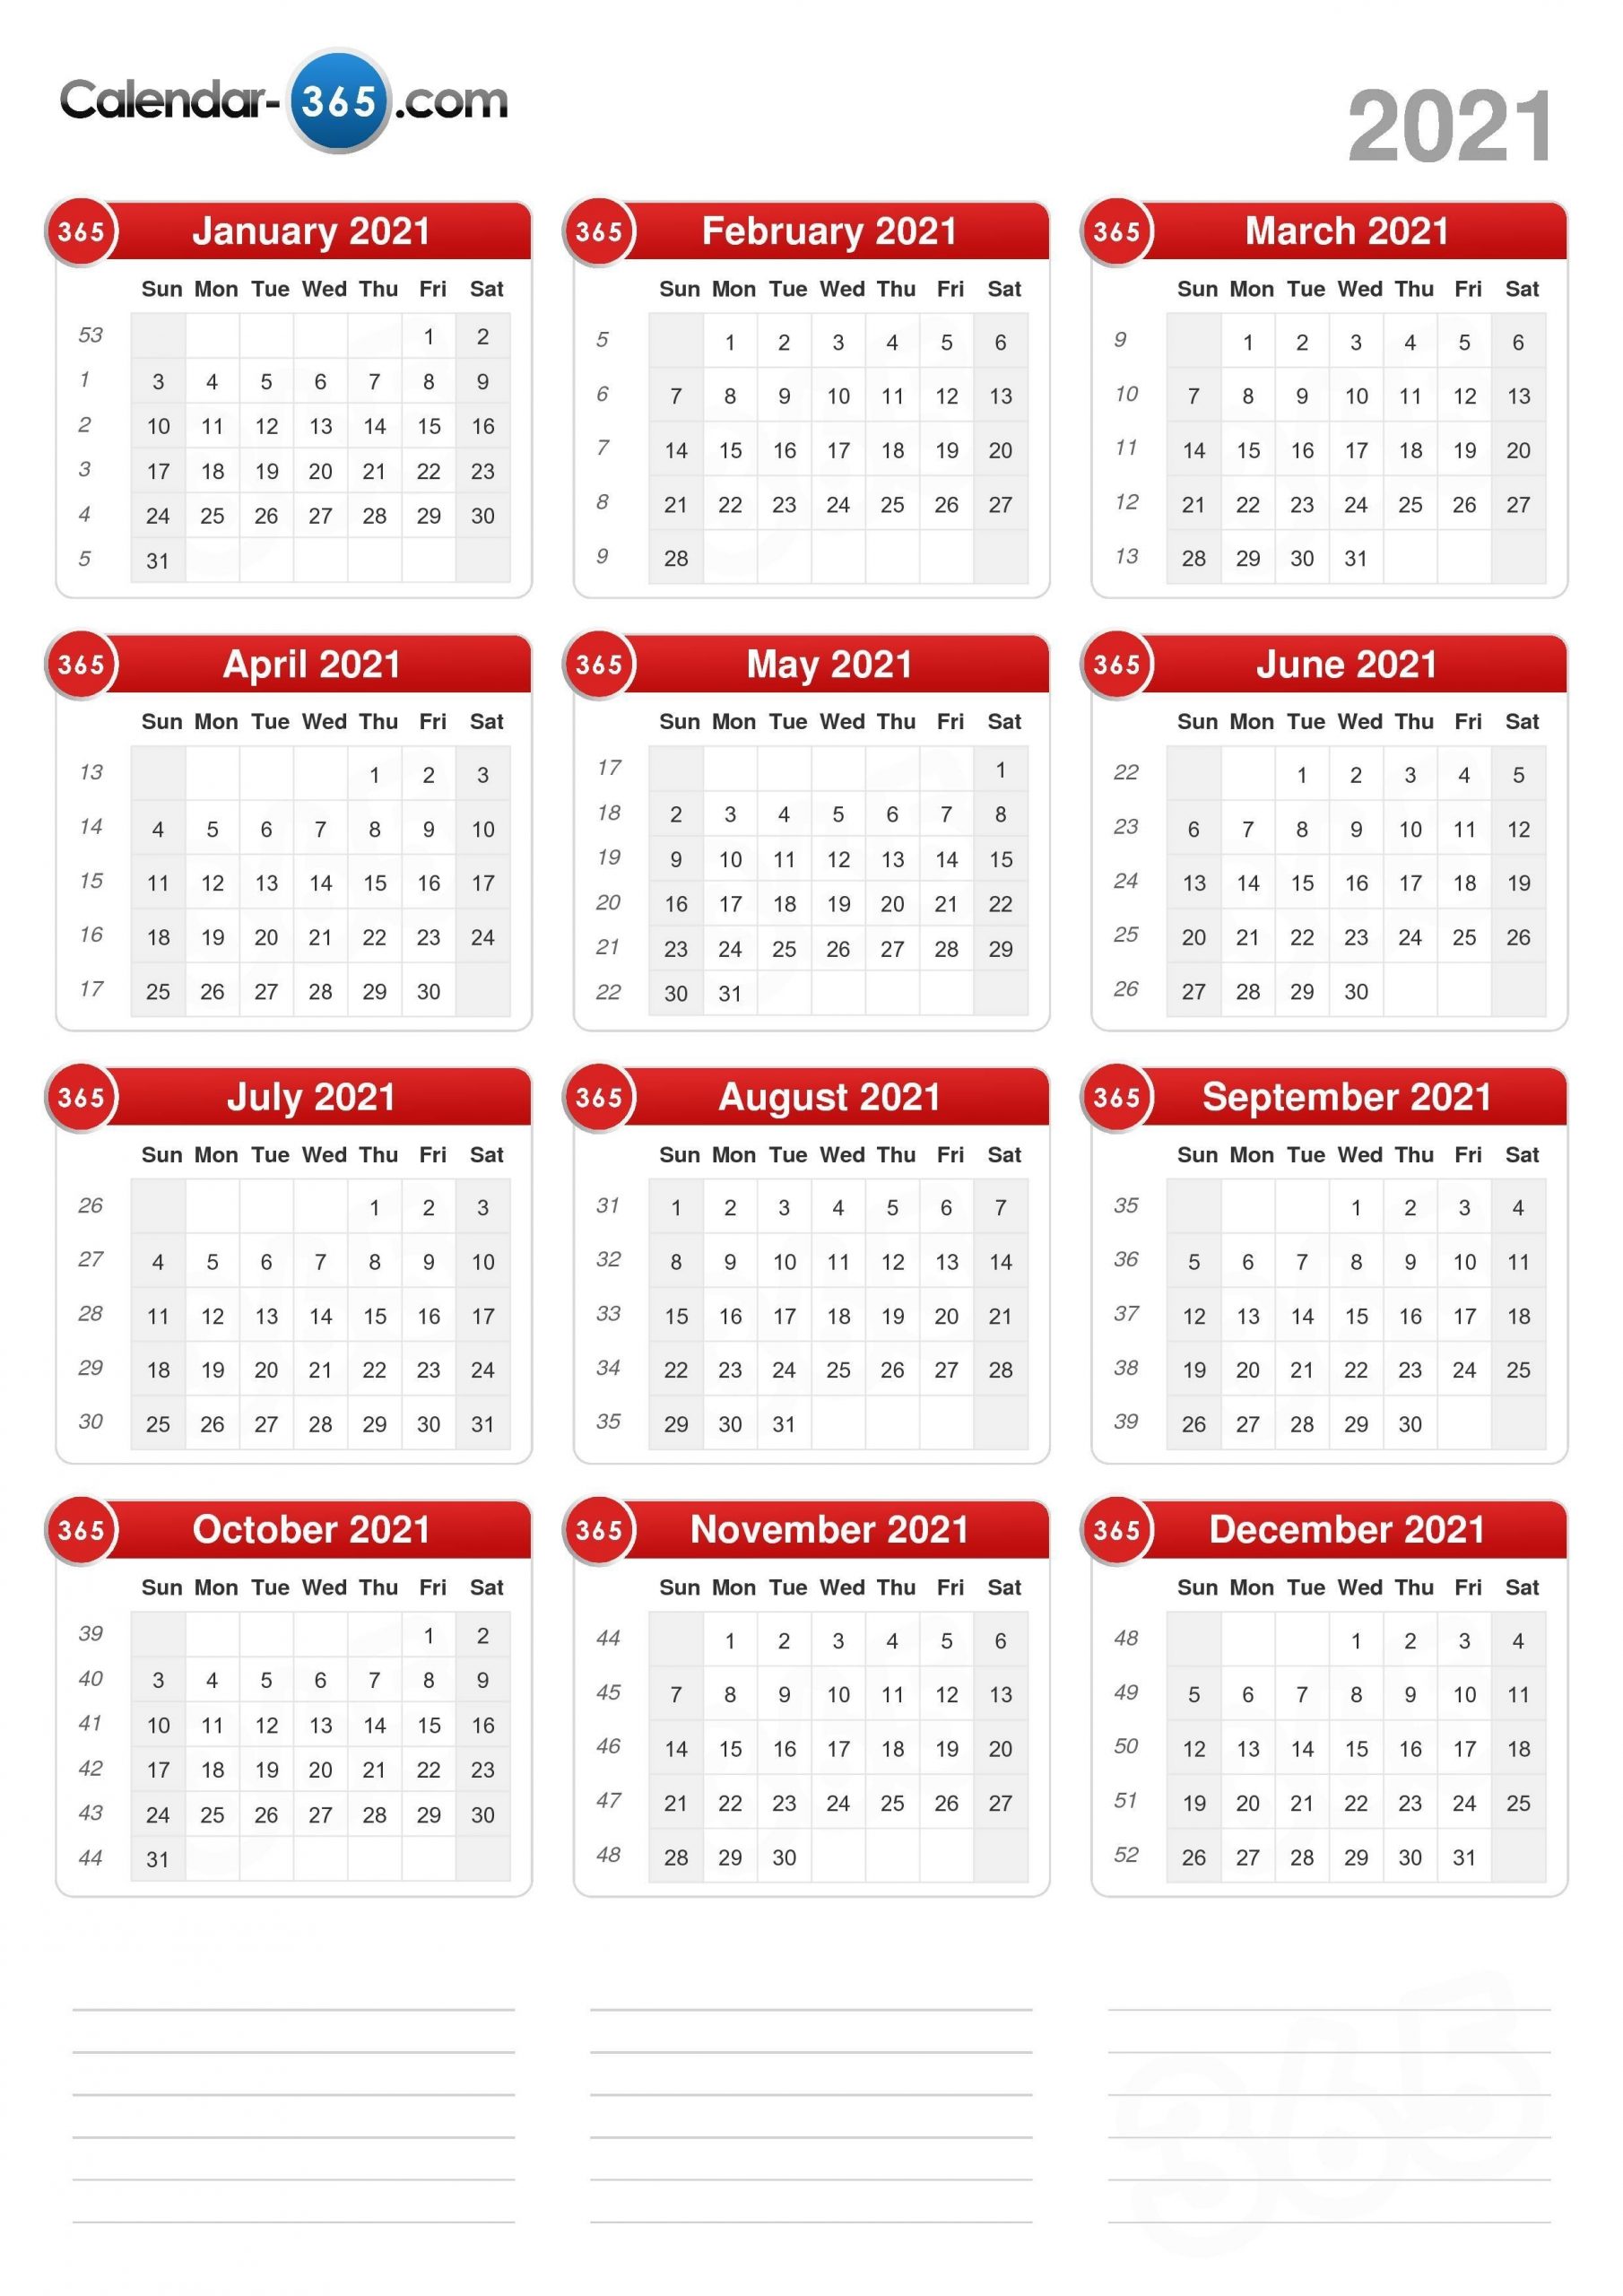 Get 2021 Calendar With Holidays